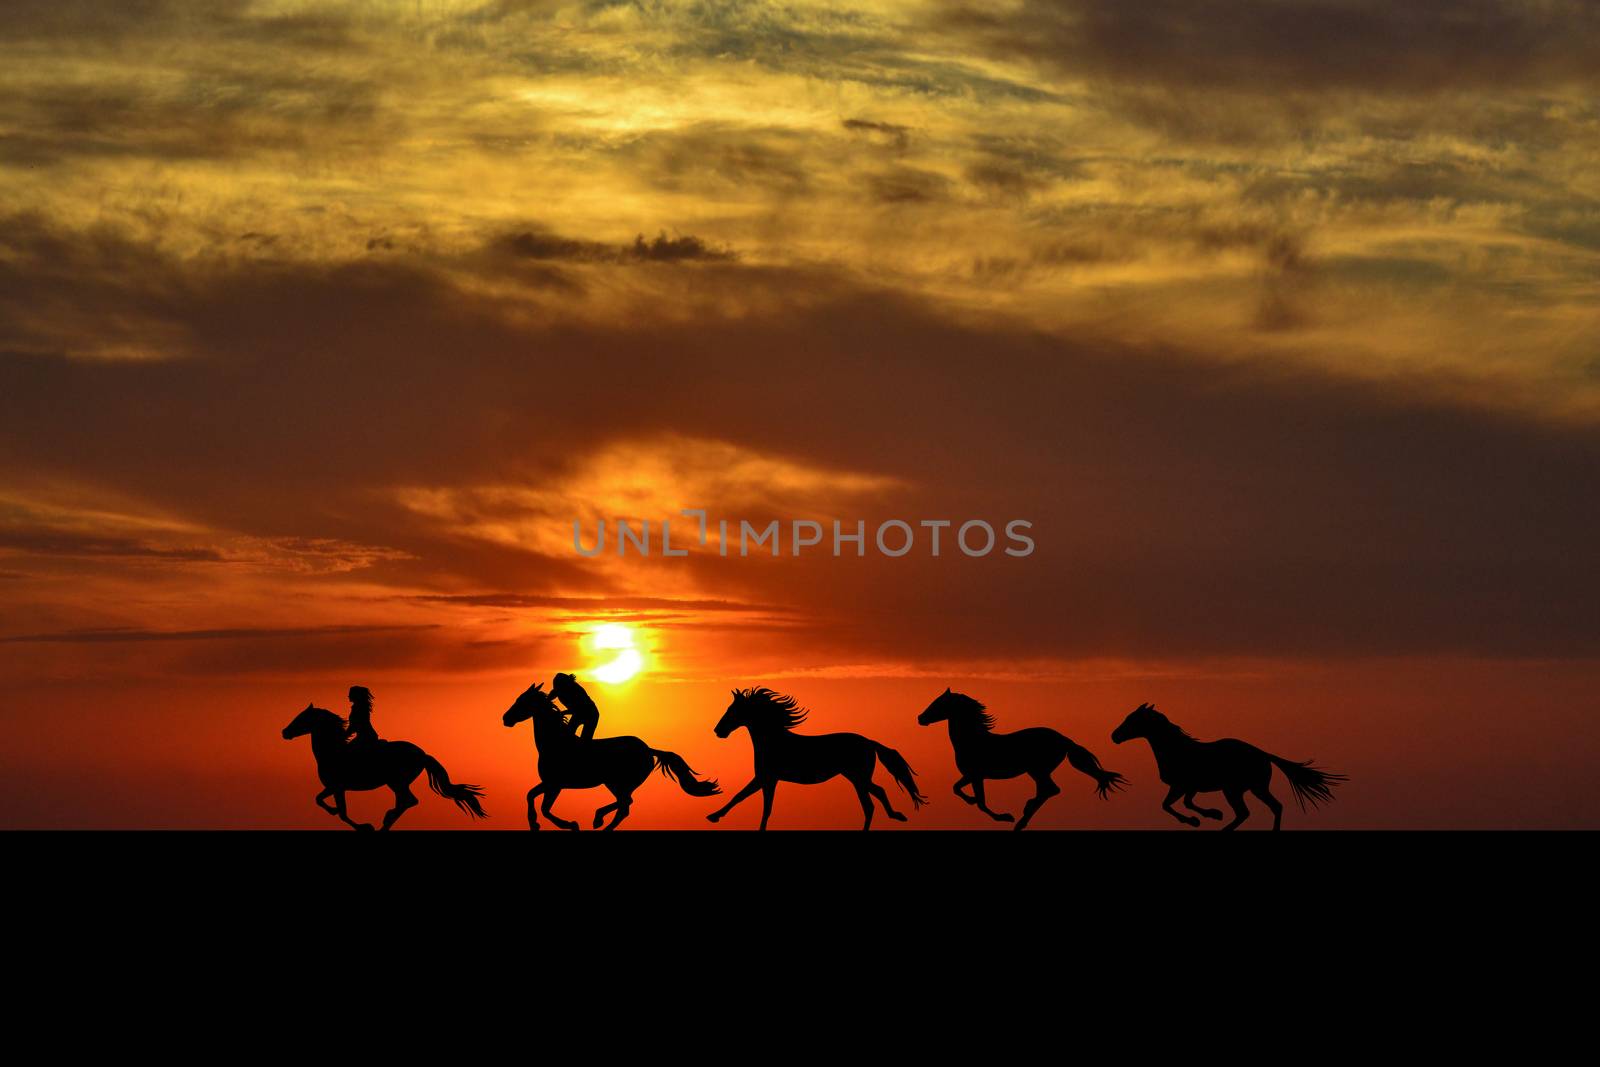 Horses galloping at sunrise by hibrida13